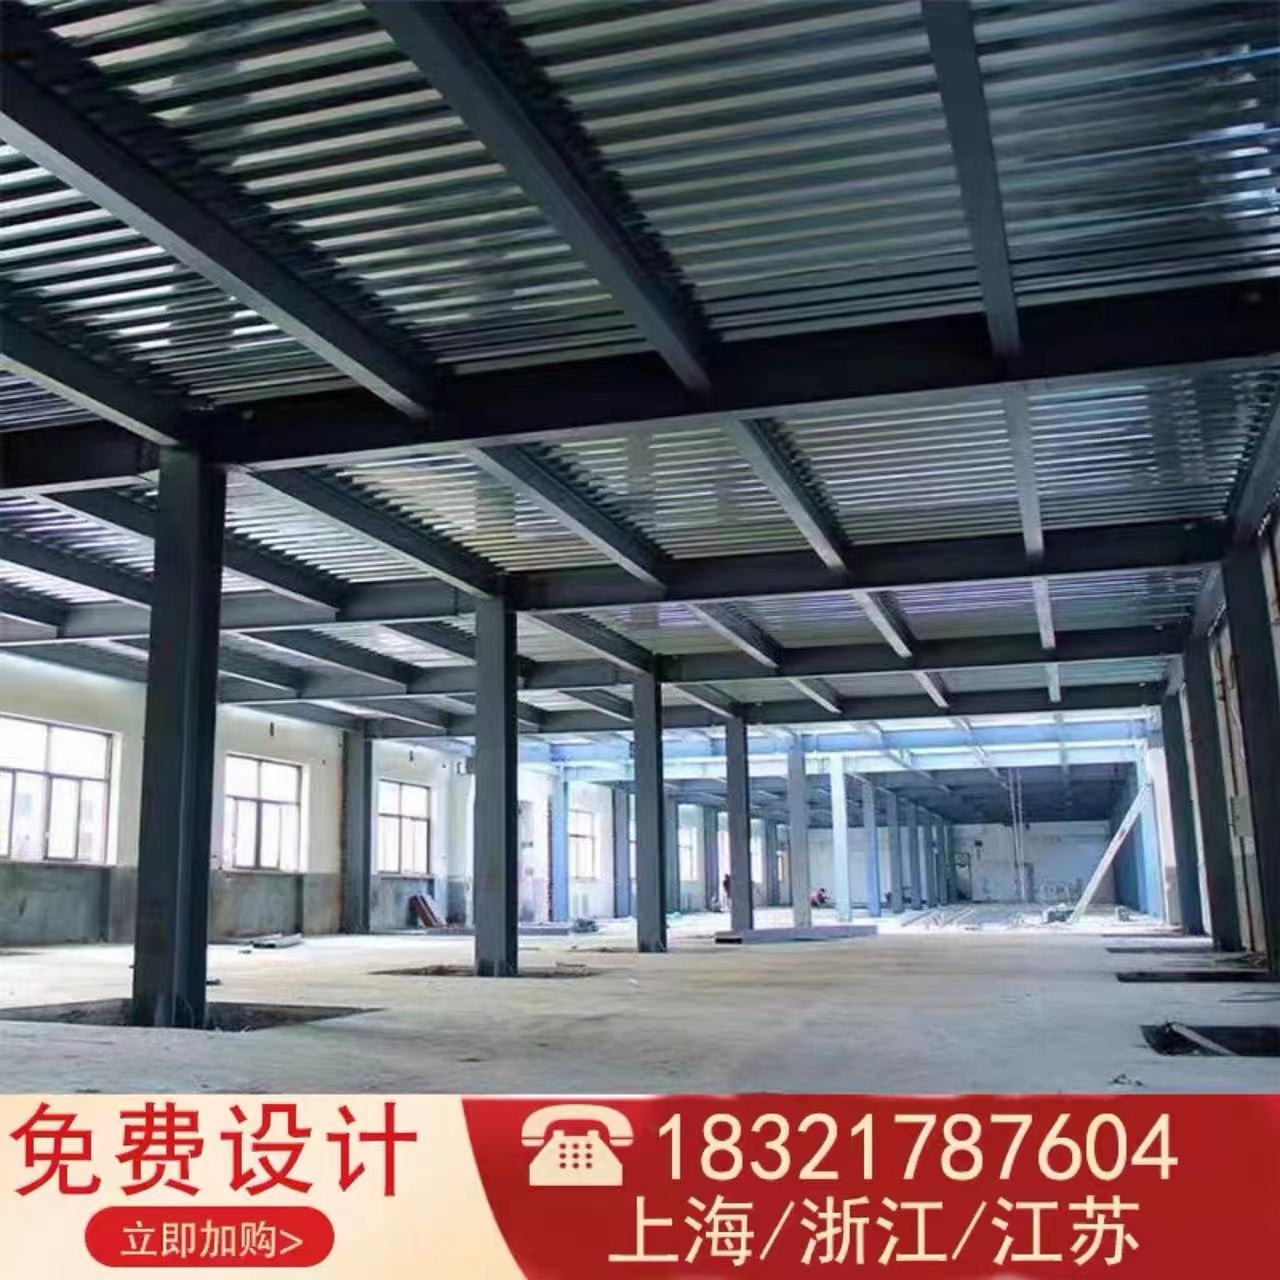 上海钢结构阁楼搭建隔层复式楼公寓室内加二层平台槽钢工字钢楼梯